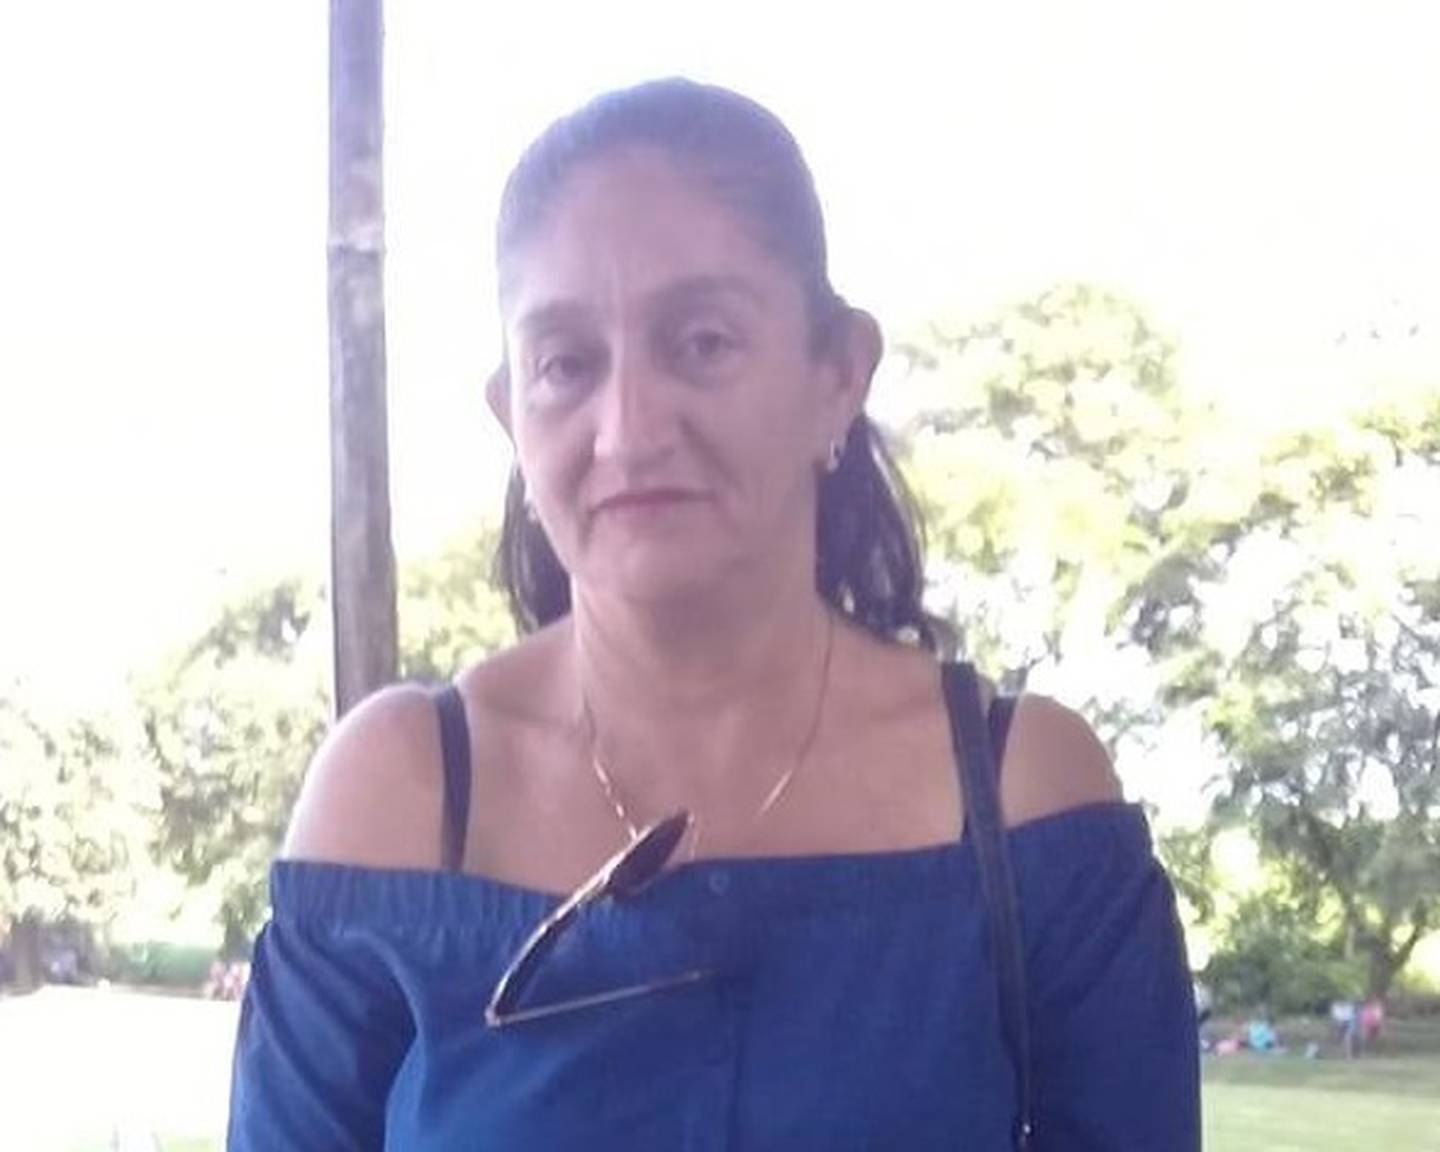 Dinia Rojas Guerrero, señora de 52 años que murió atropellada en Guácimo. Foto tomada de Facebook.